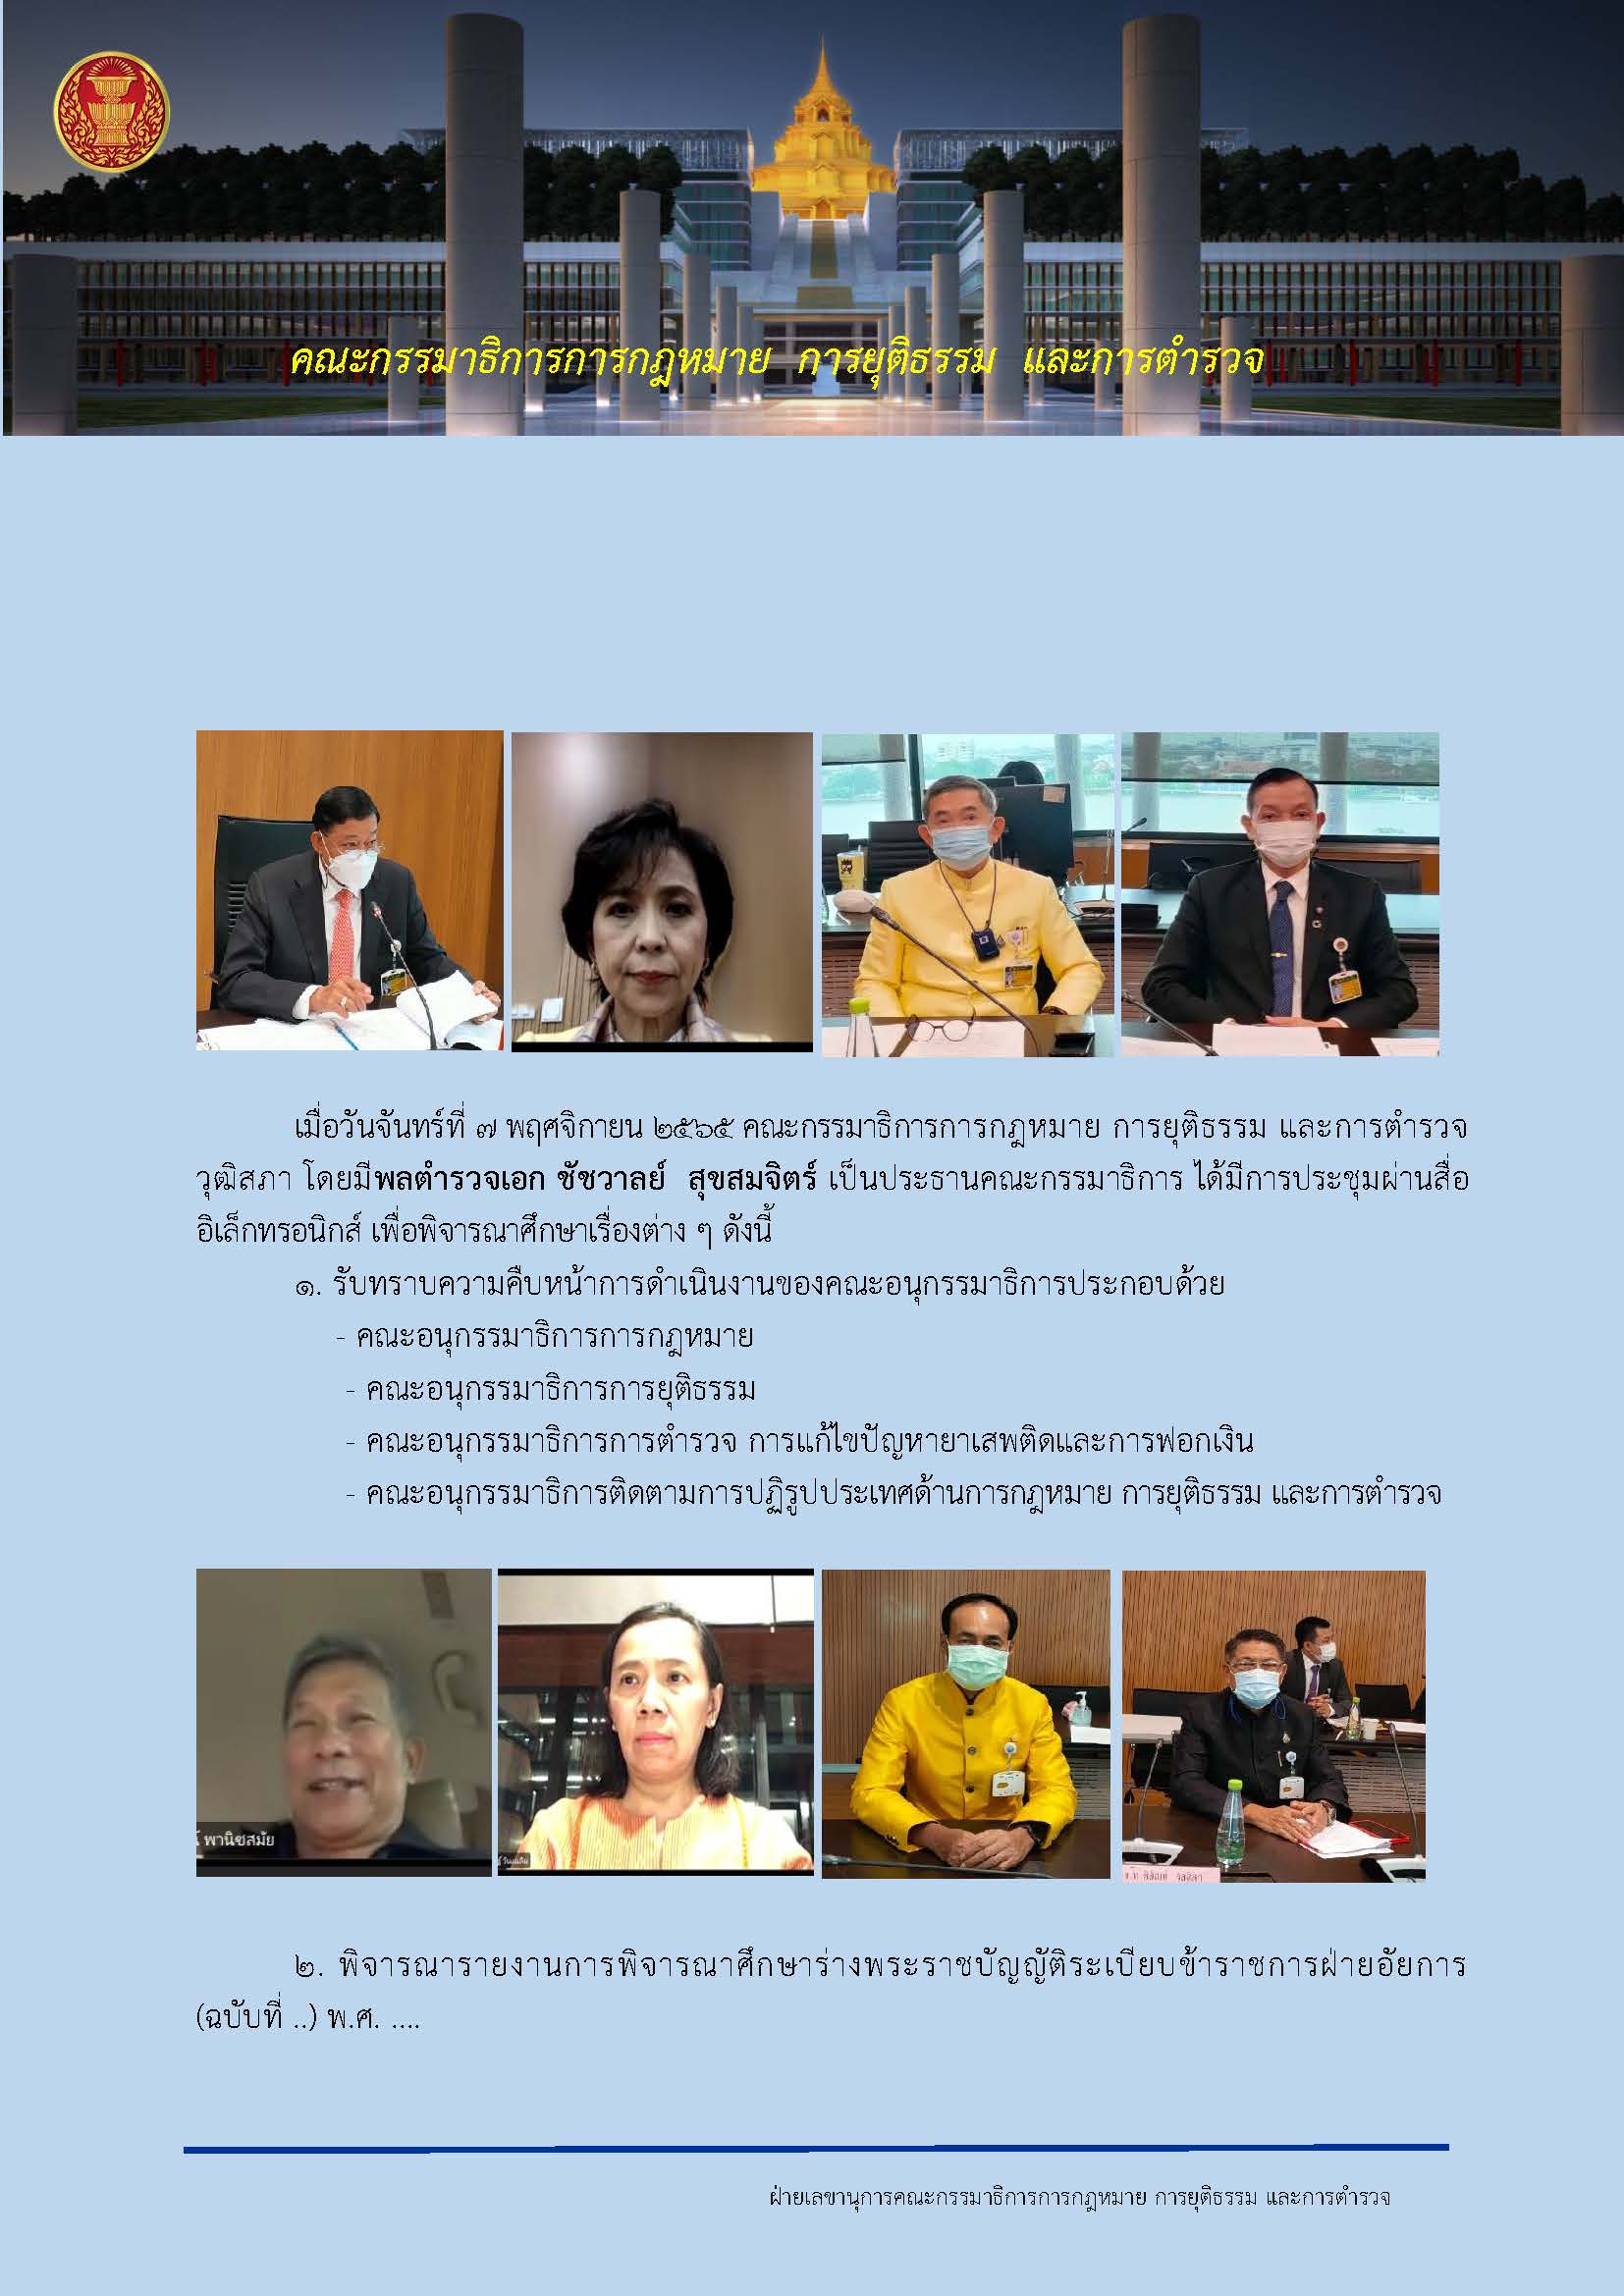 สรุปการประชุมคณะกรรมาธิการการกฎหมาย การยุติธรรม และการตำรวจ วุฒิสภา ครั้งที่ 44/2565 วันจันทร์ที่ 7 พ.ย. 2565